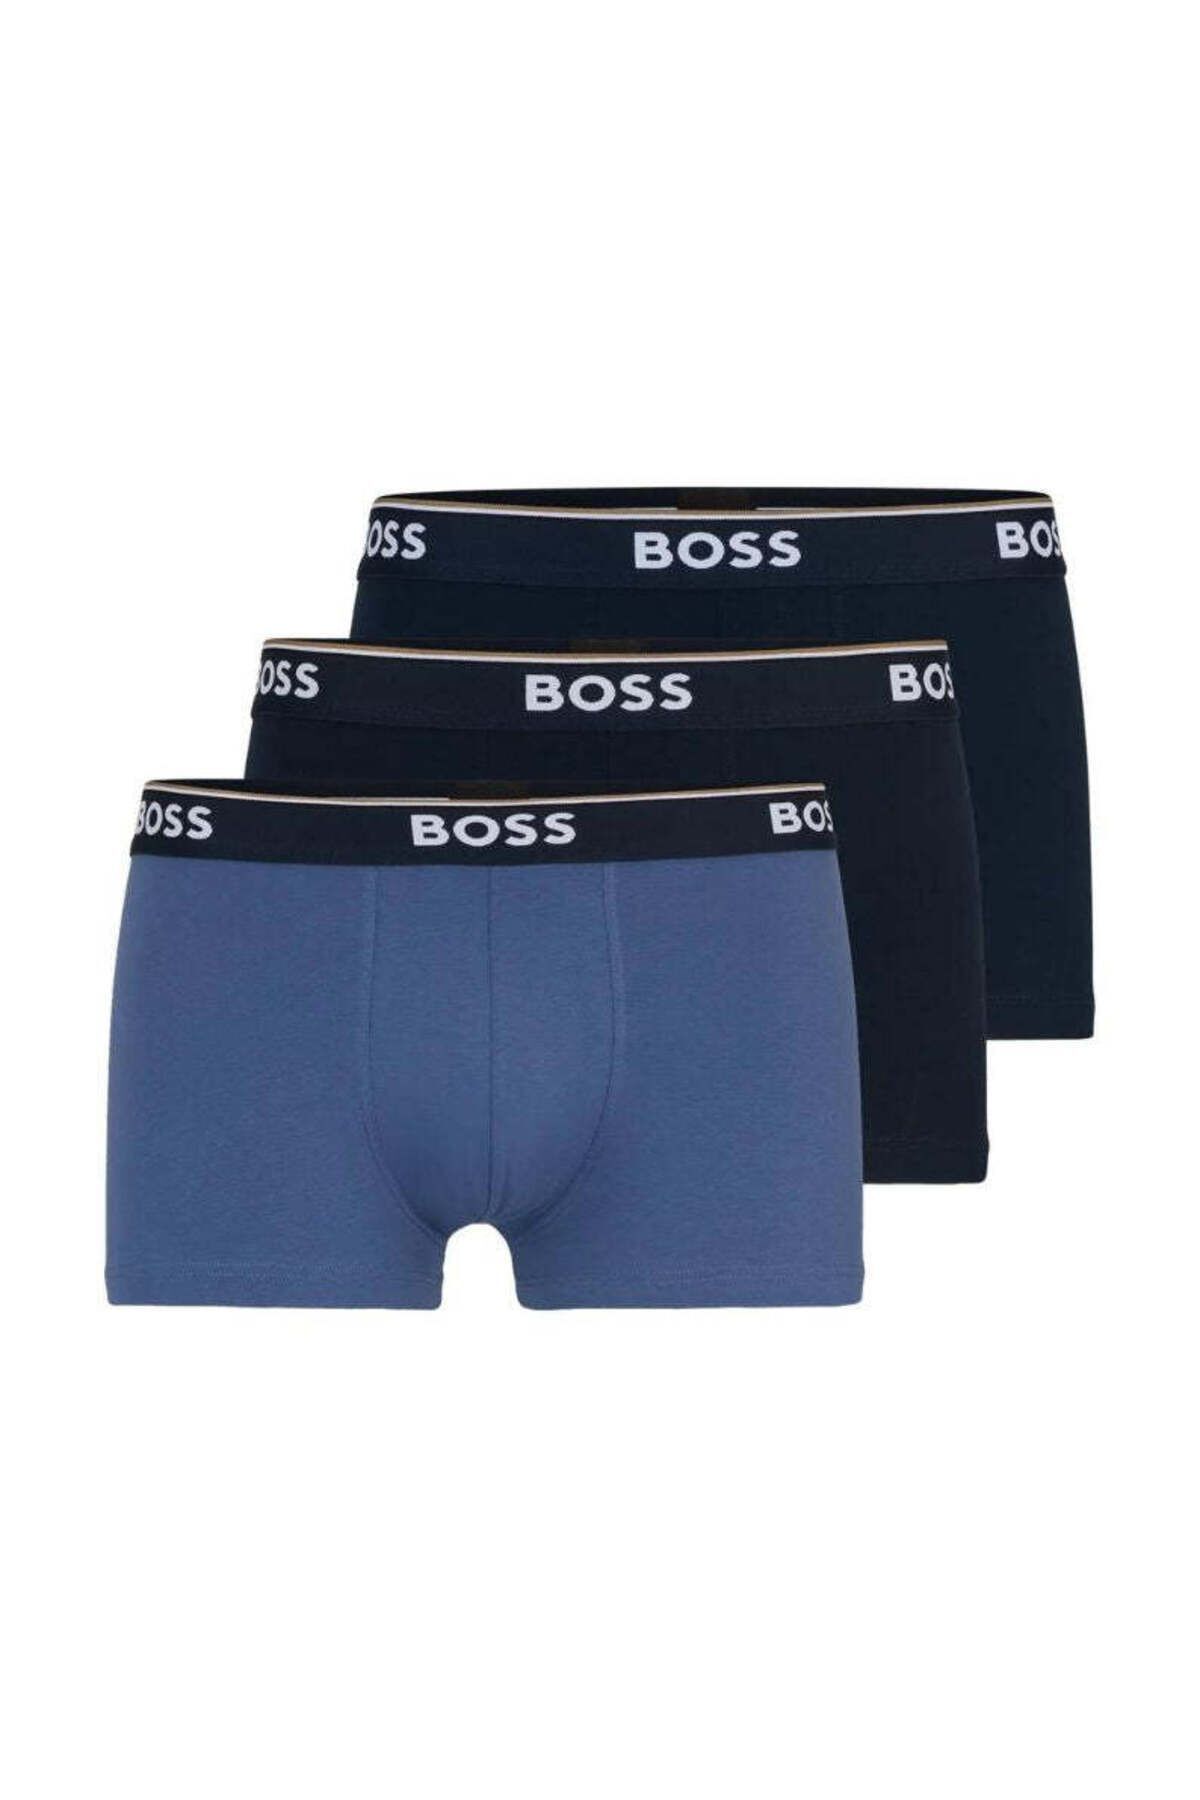 BOSS Erkek Marka Logolu Beli Lastikli Siyah-Mavi Boxer 50508985-987